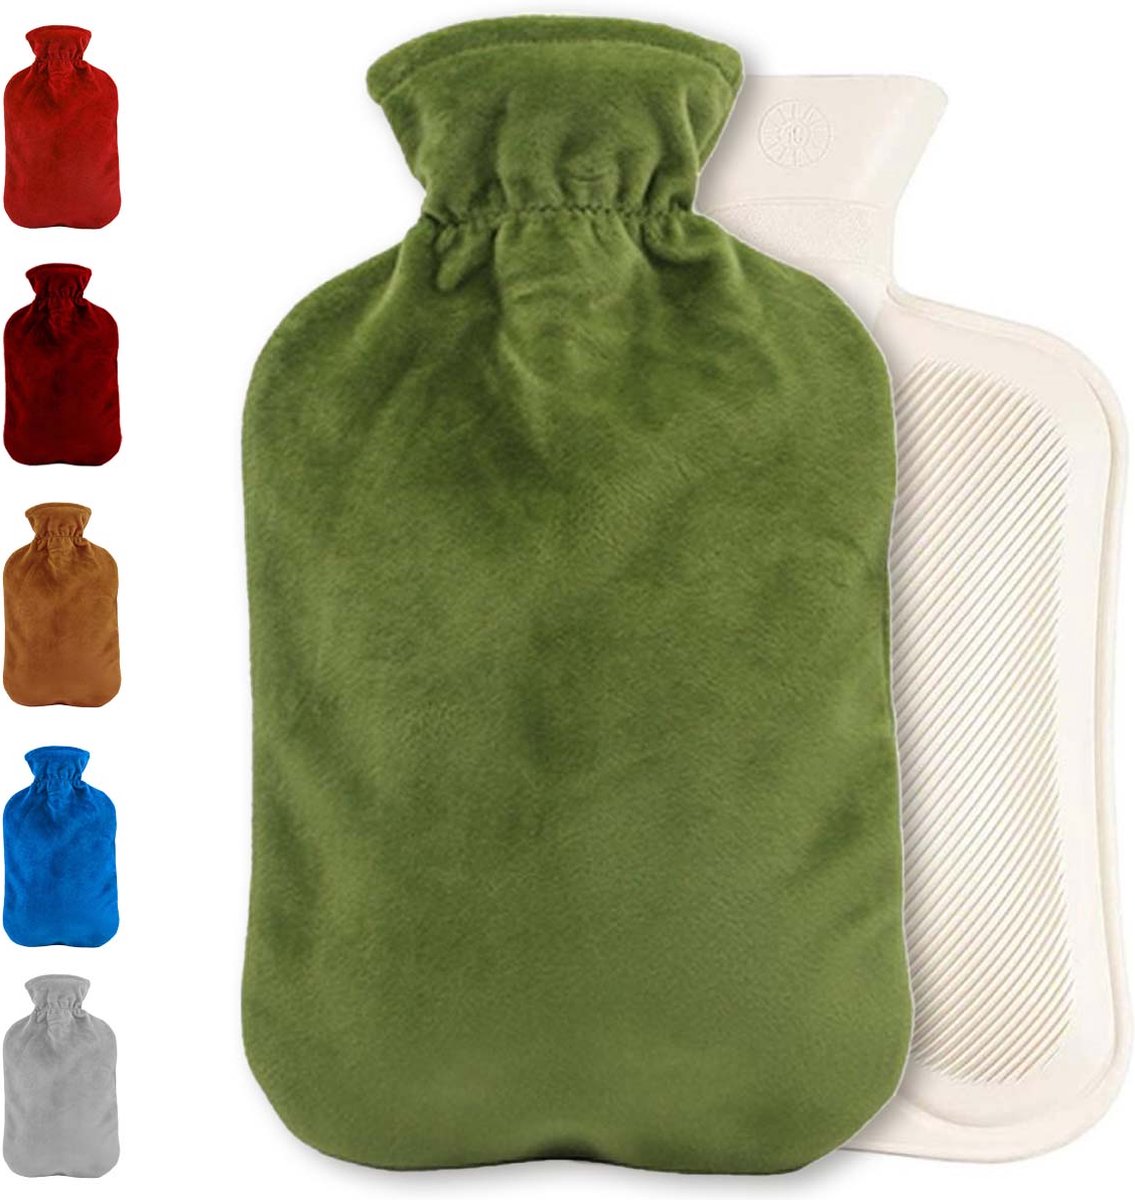 Warmwaterkruik met fleece hoes - Warmtekruik - Kruik - Warmwaterkruik - Rubber - 2 liter - Groen - Inclusief fleece hoes - Able & Borret